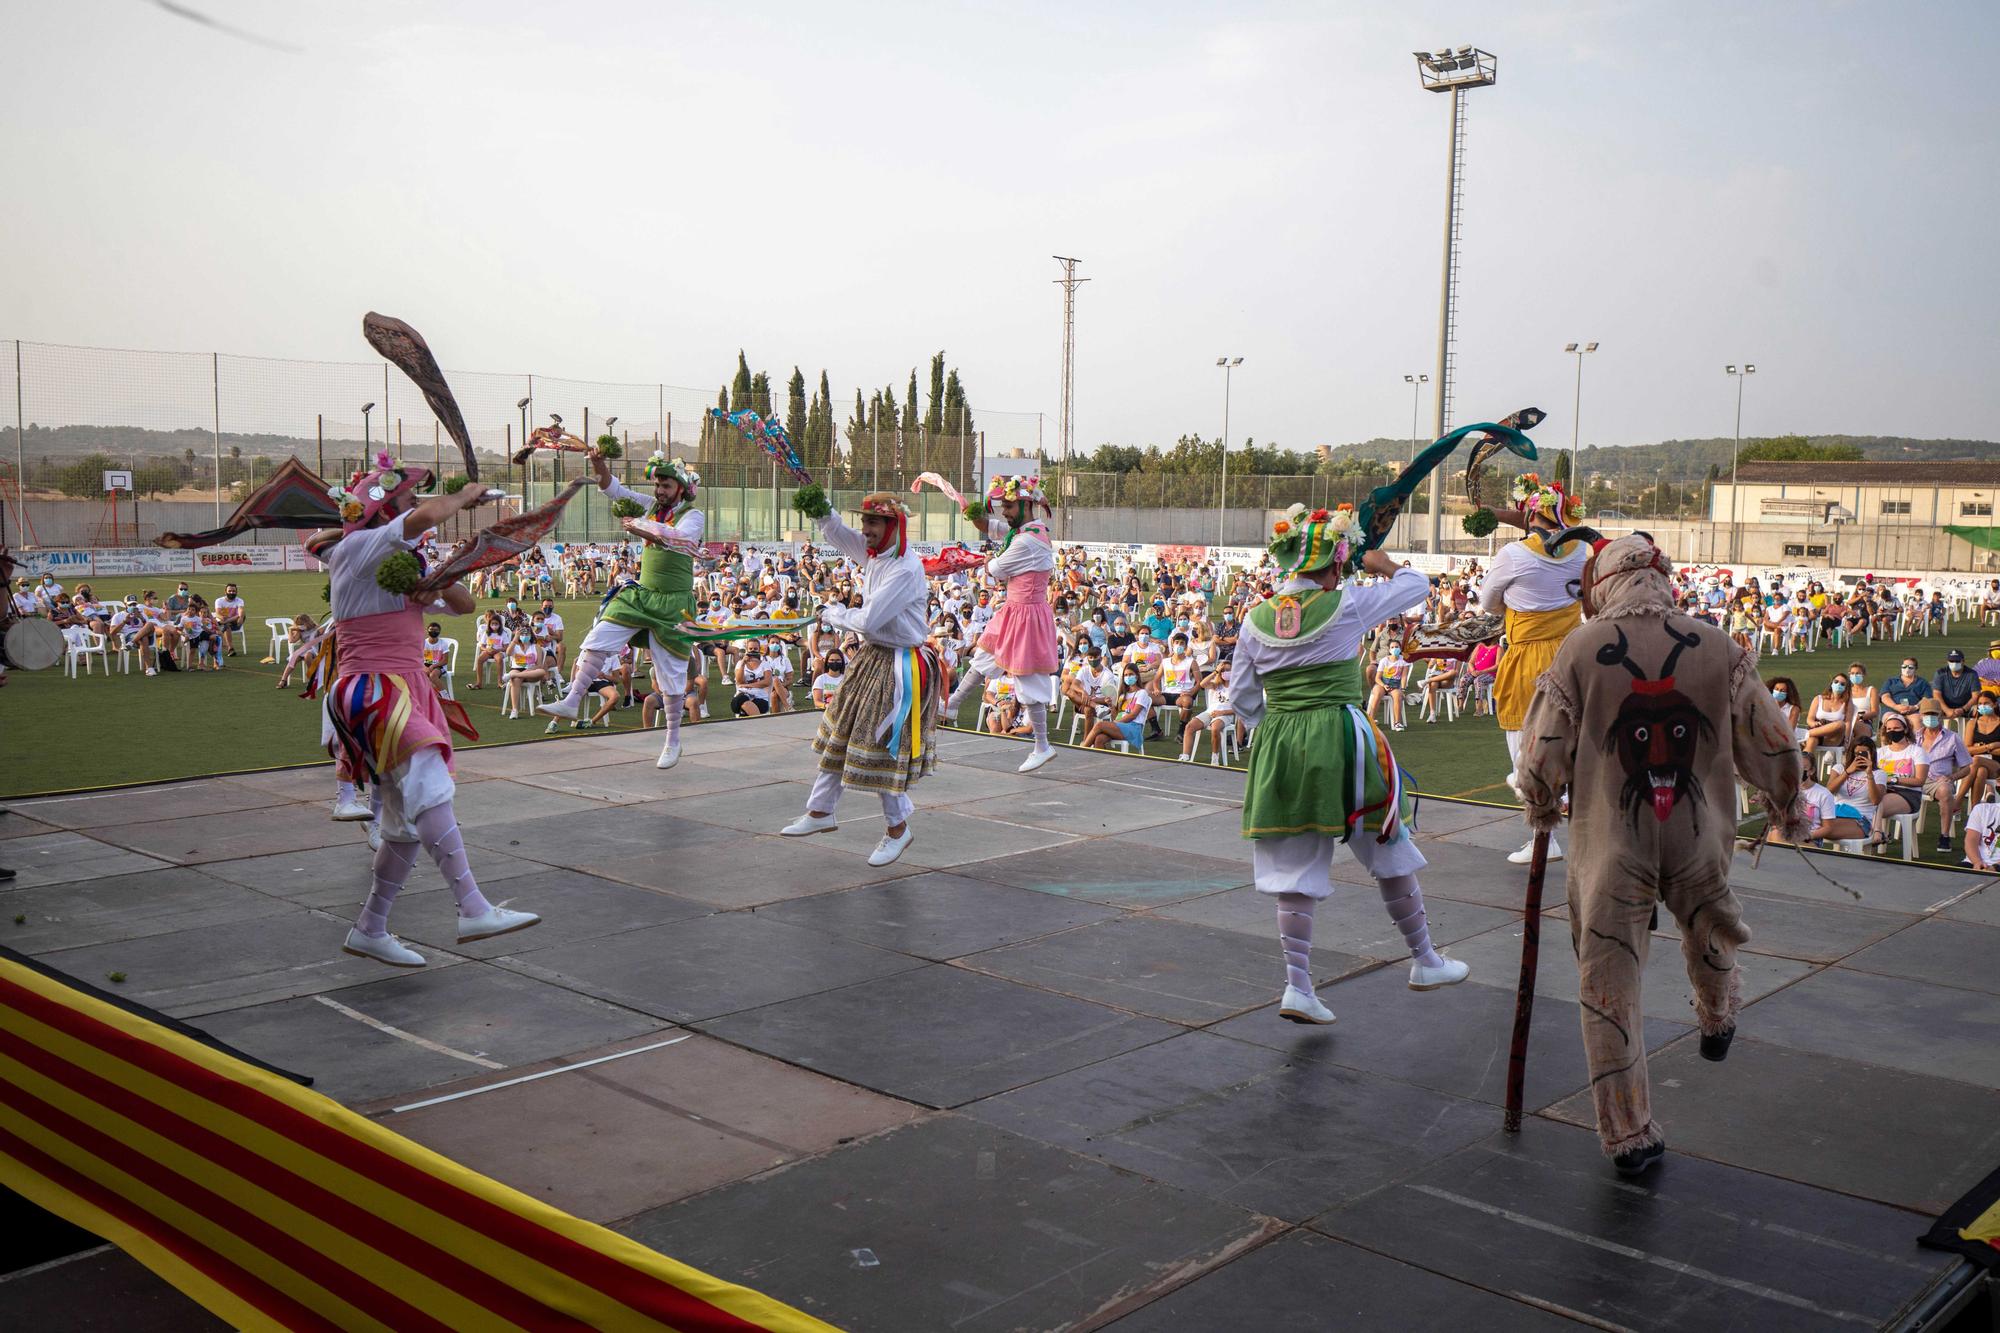 Los 'Cossiers' de Montuïri danzan con el lema: "Facem bulla, però amb seny"